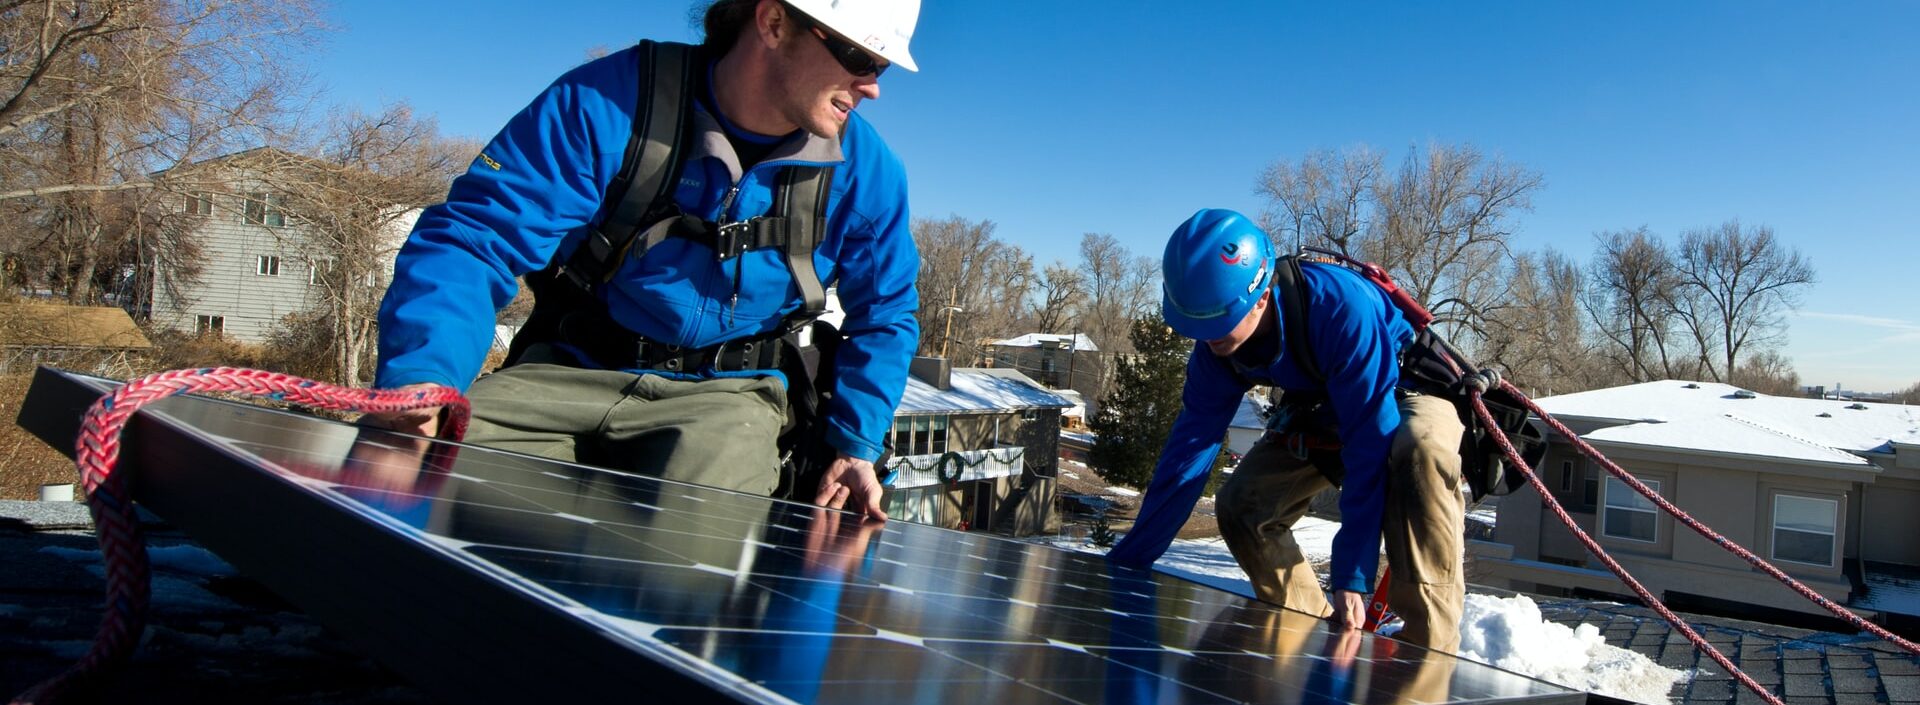 Instalando Painel Solar - Energia solar: a maior tendência na redução de custos e geração de energia limpa